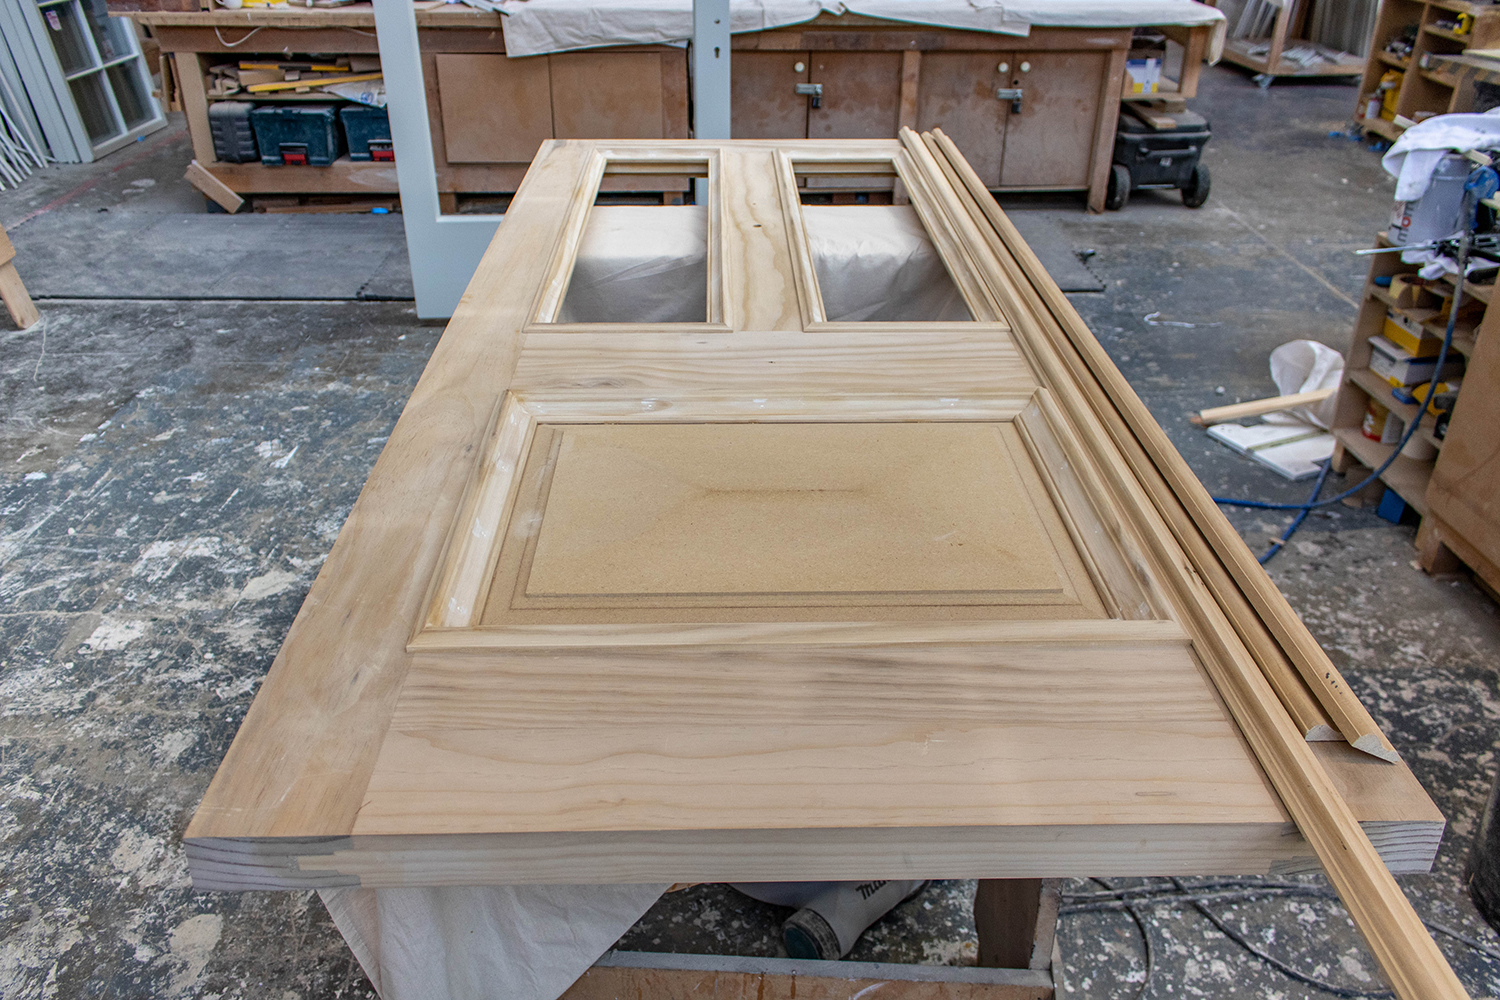 bespoke wood door construction in joinery workshop